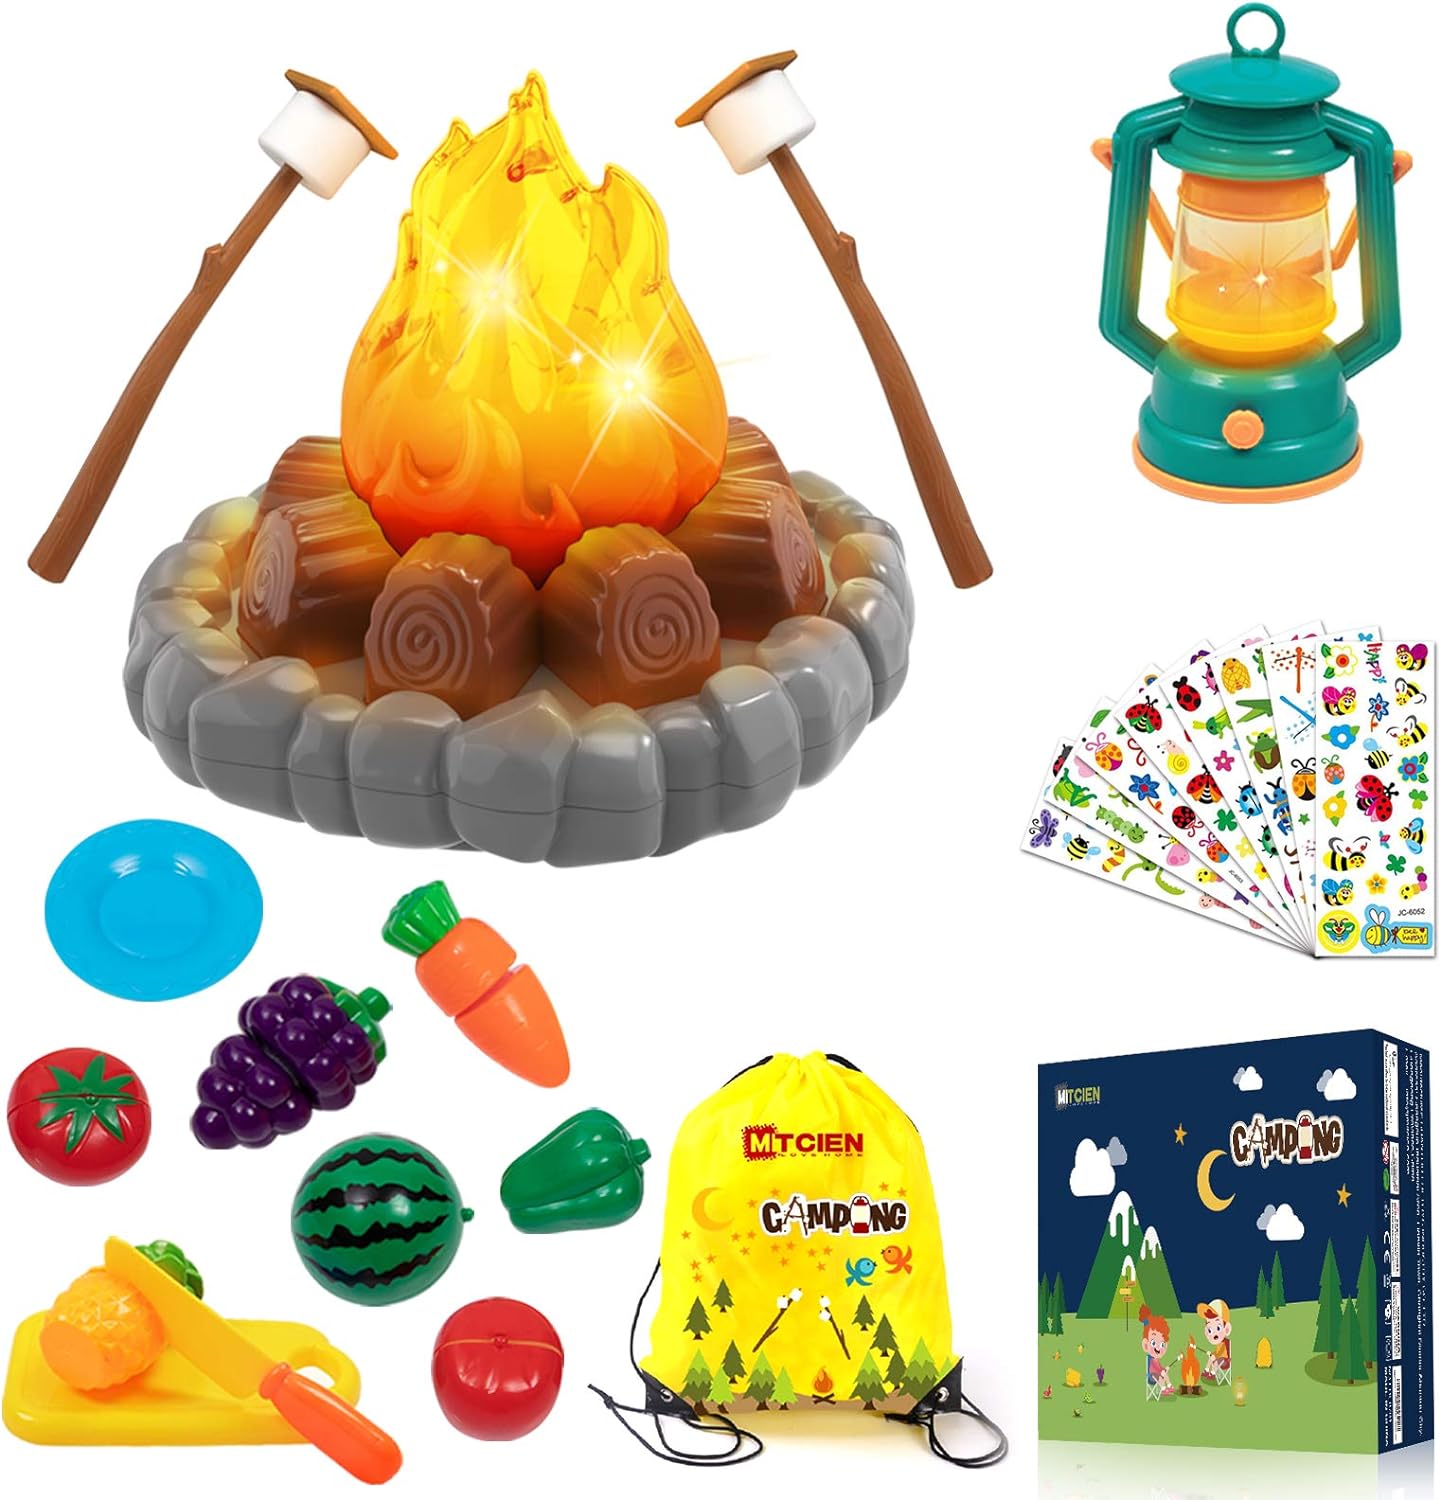 MITCIEN- Set de juguetes para acampar